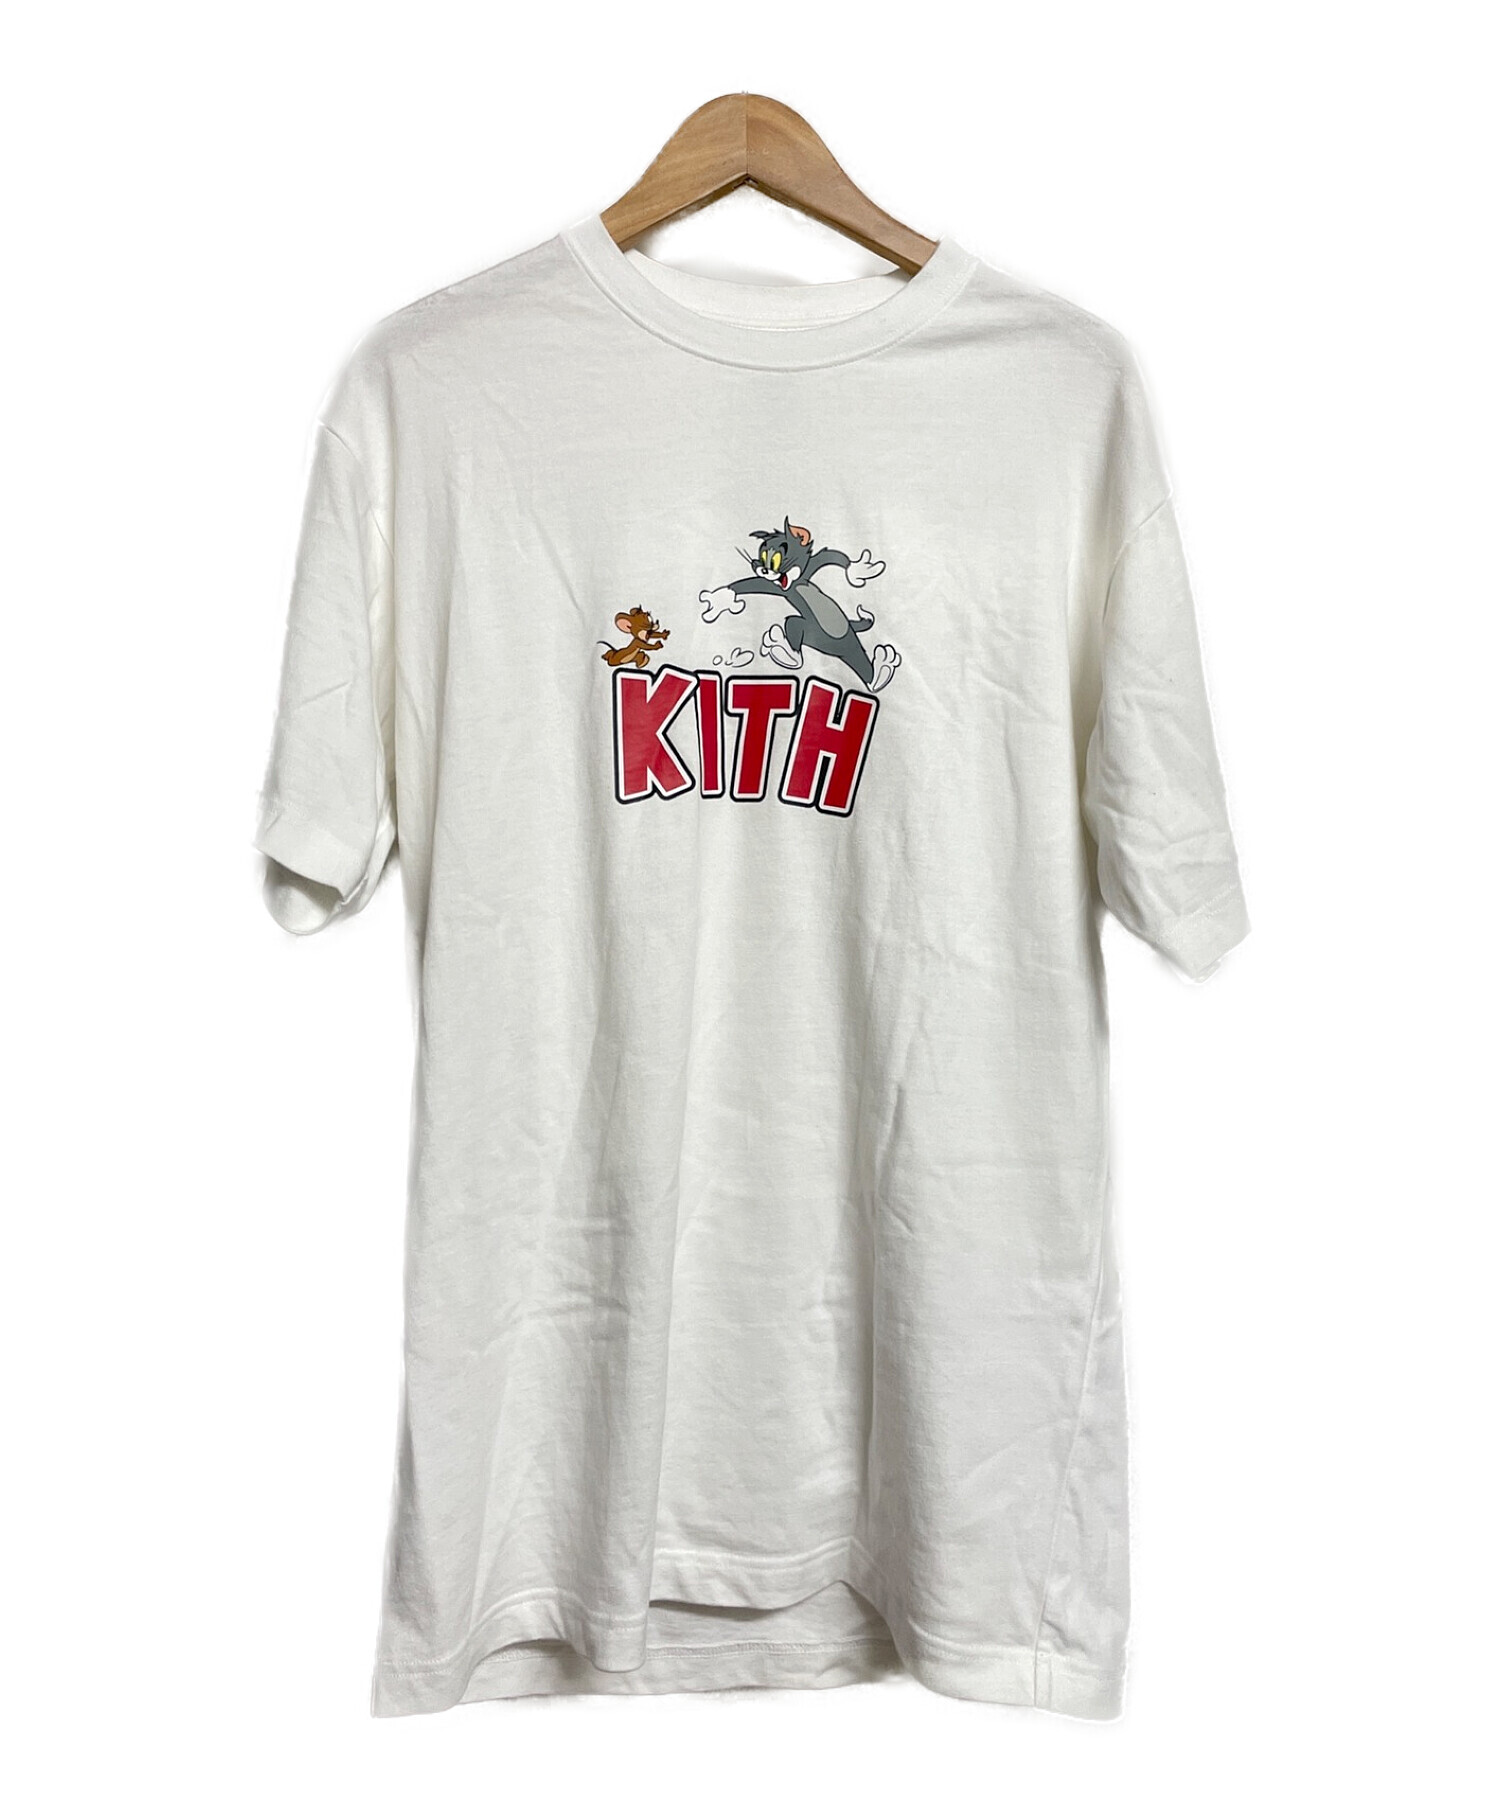 KITH (キス) Tシャツ ホワイト サイズ:S